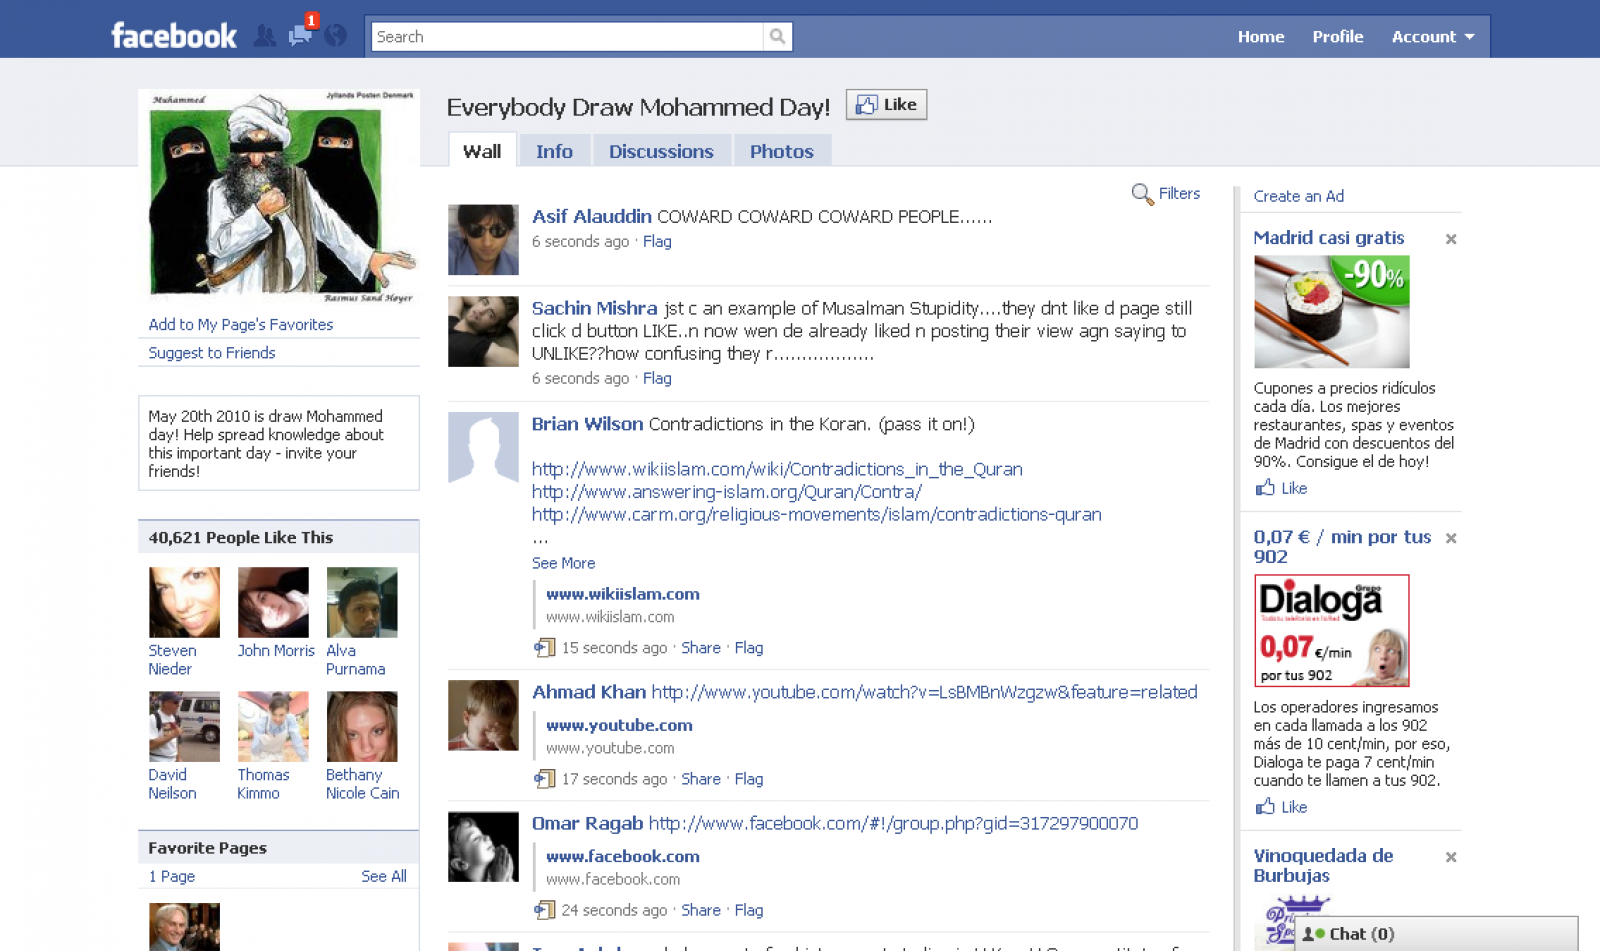 La página de Facebook que invita a dibujar a Mahoma tiene más de 40.000 seguidores.